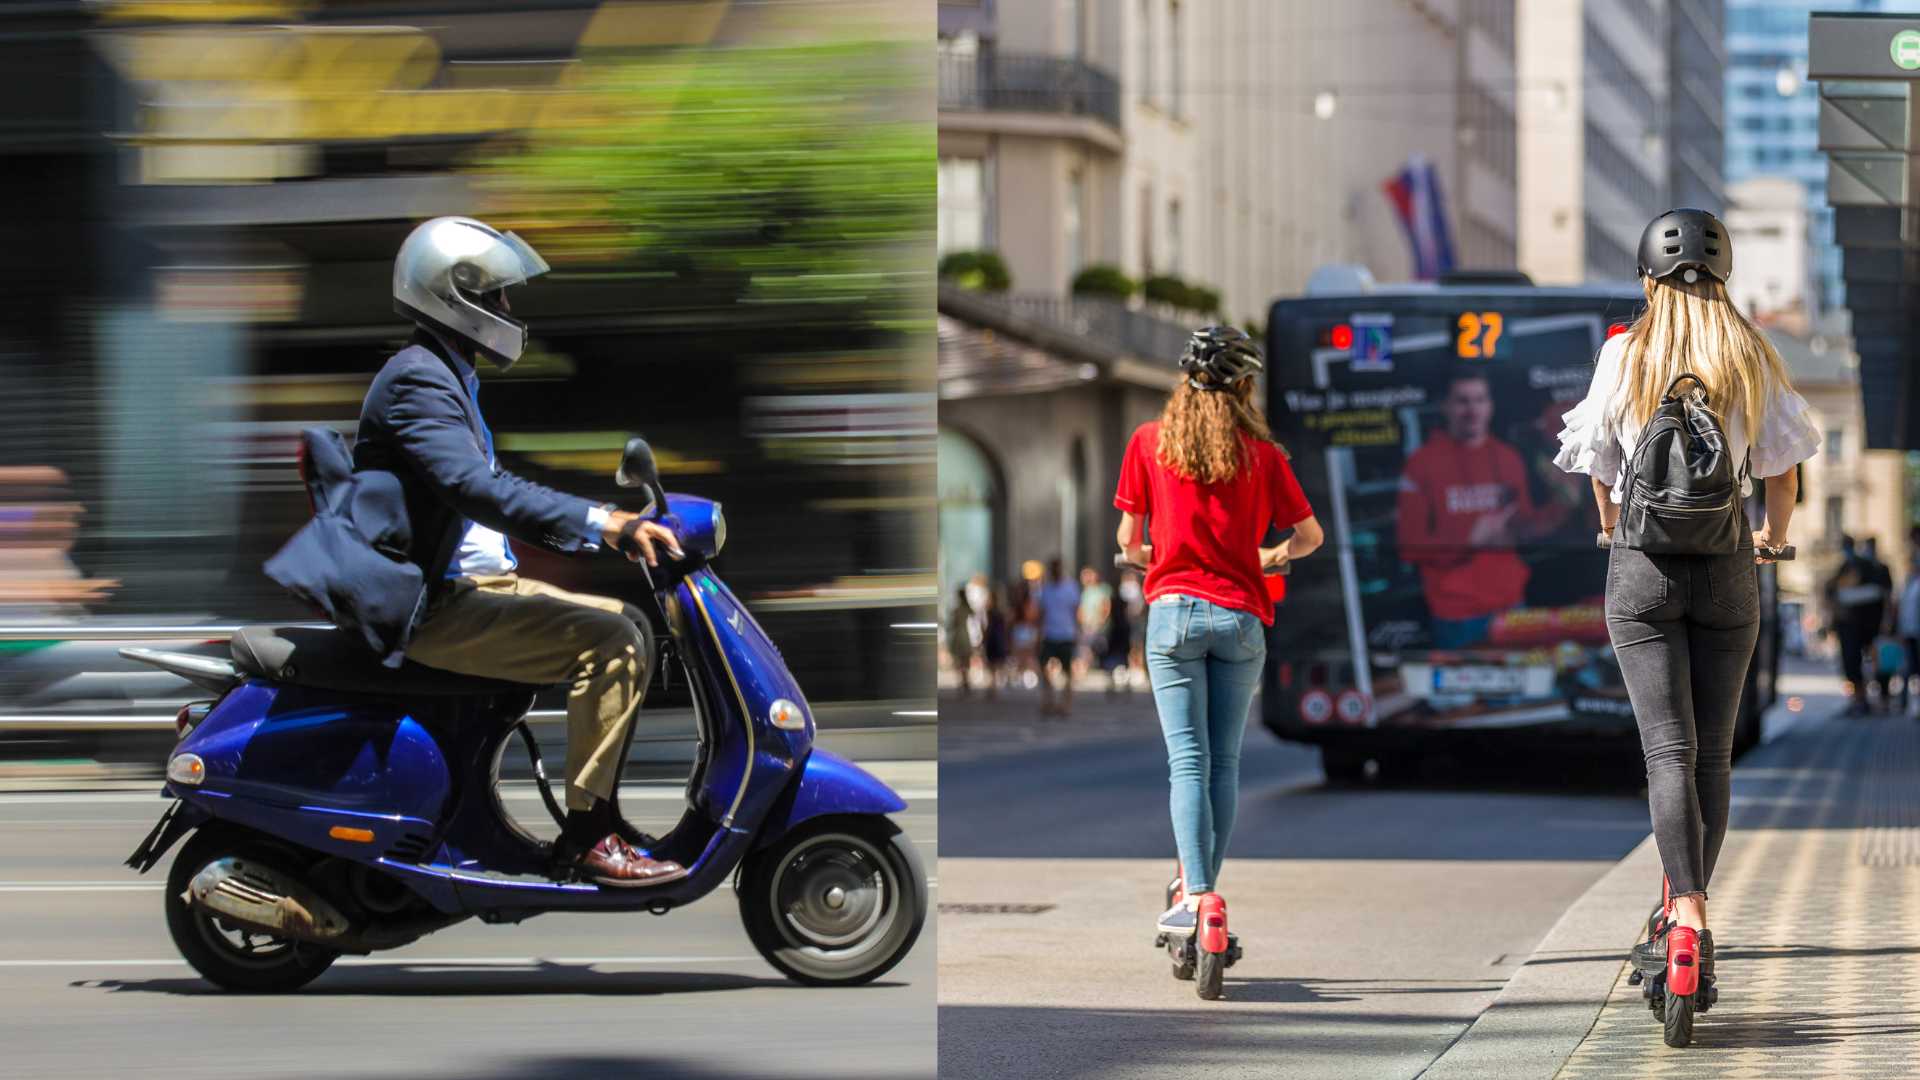 Auguri Motoplatinum! Come è cambiata in 10 anni la mobilità urbana?